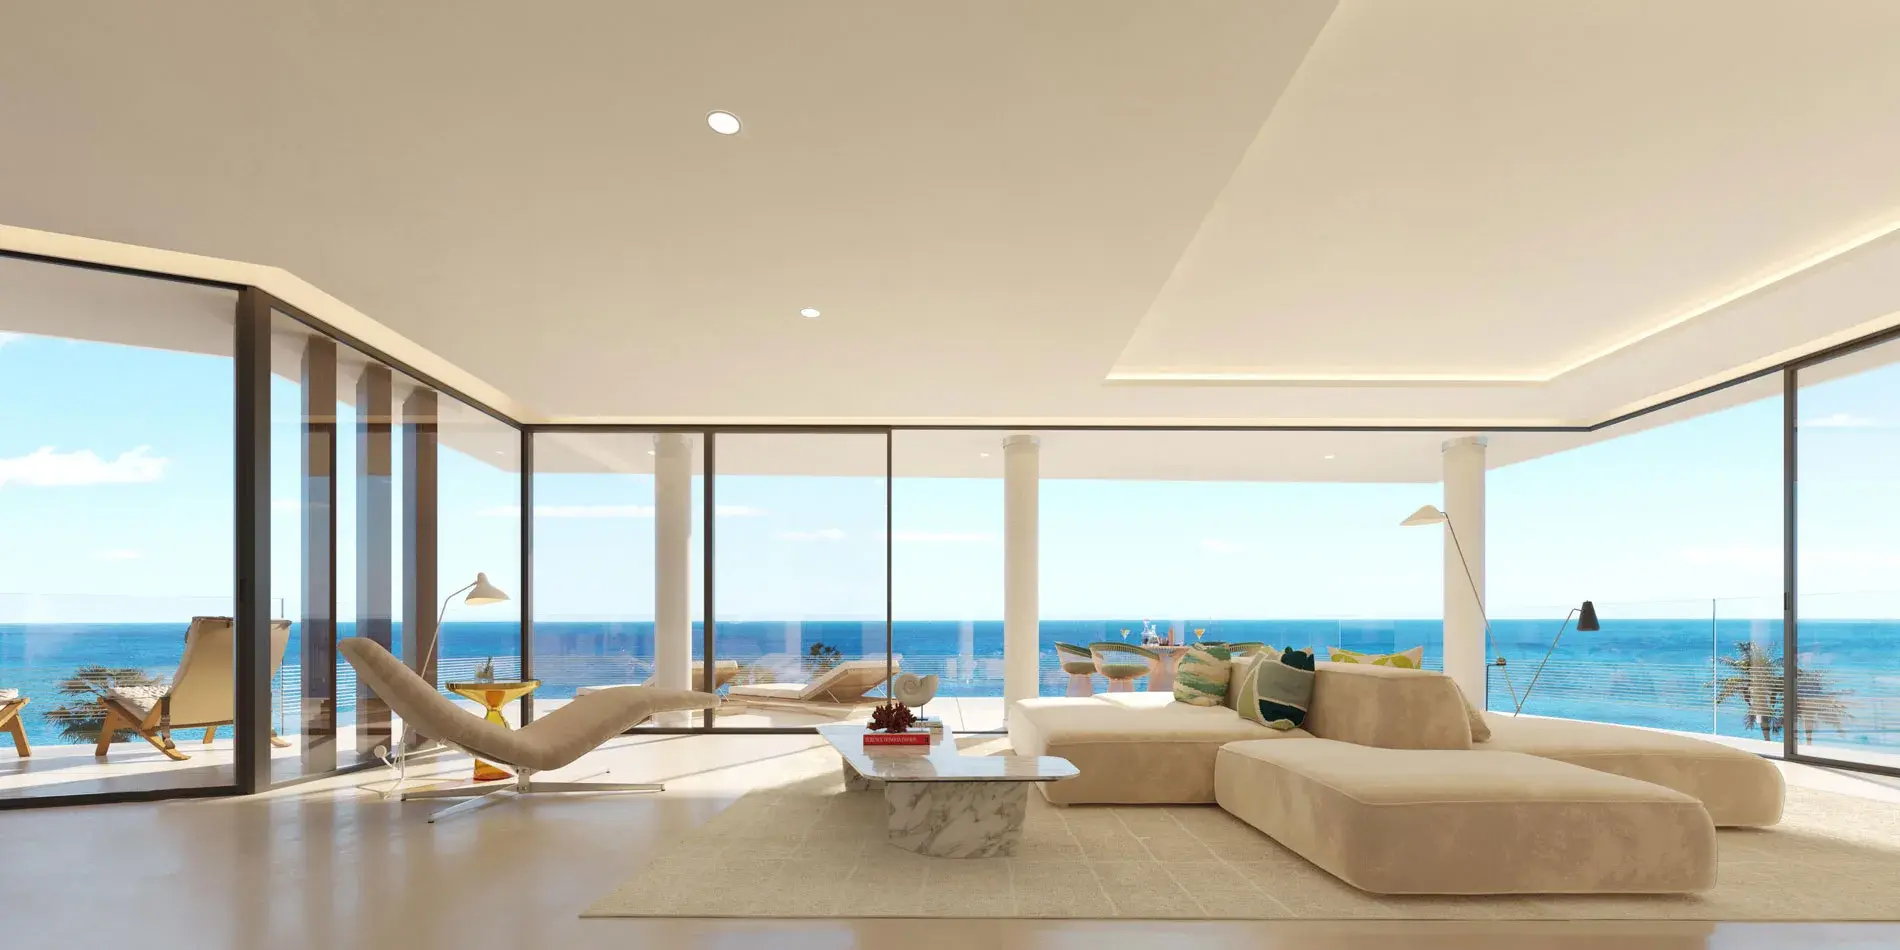 Stunning 2 bedroom frontline beach luxury flat in Estepona. | Image 5